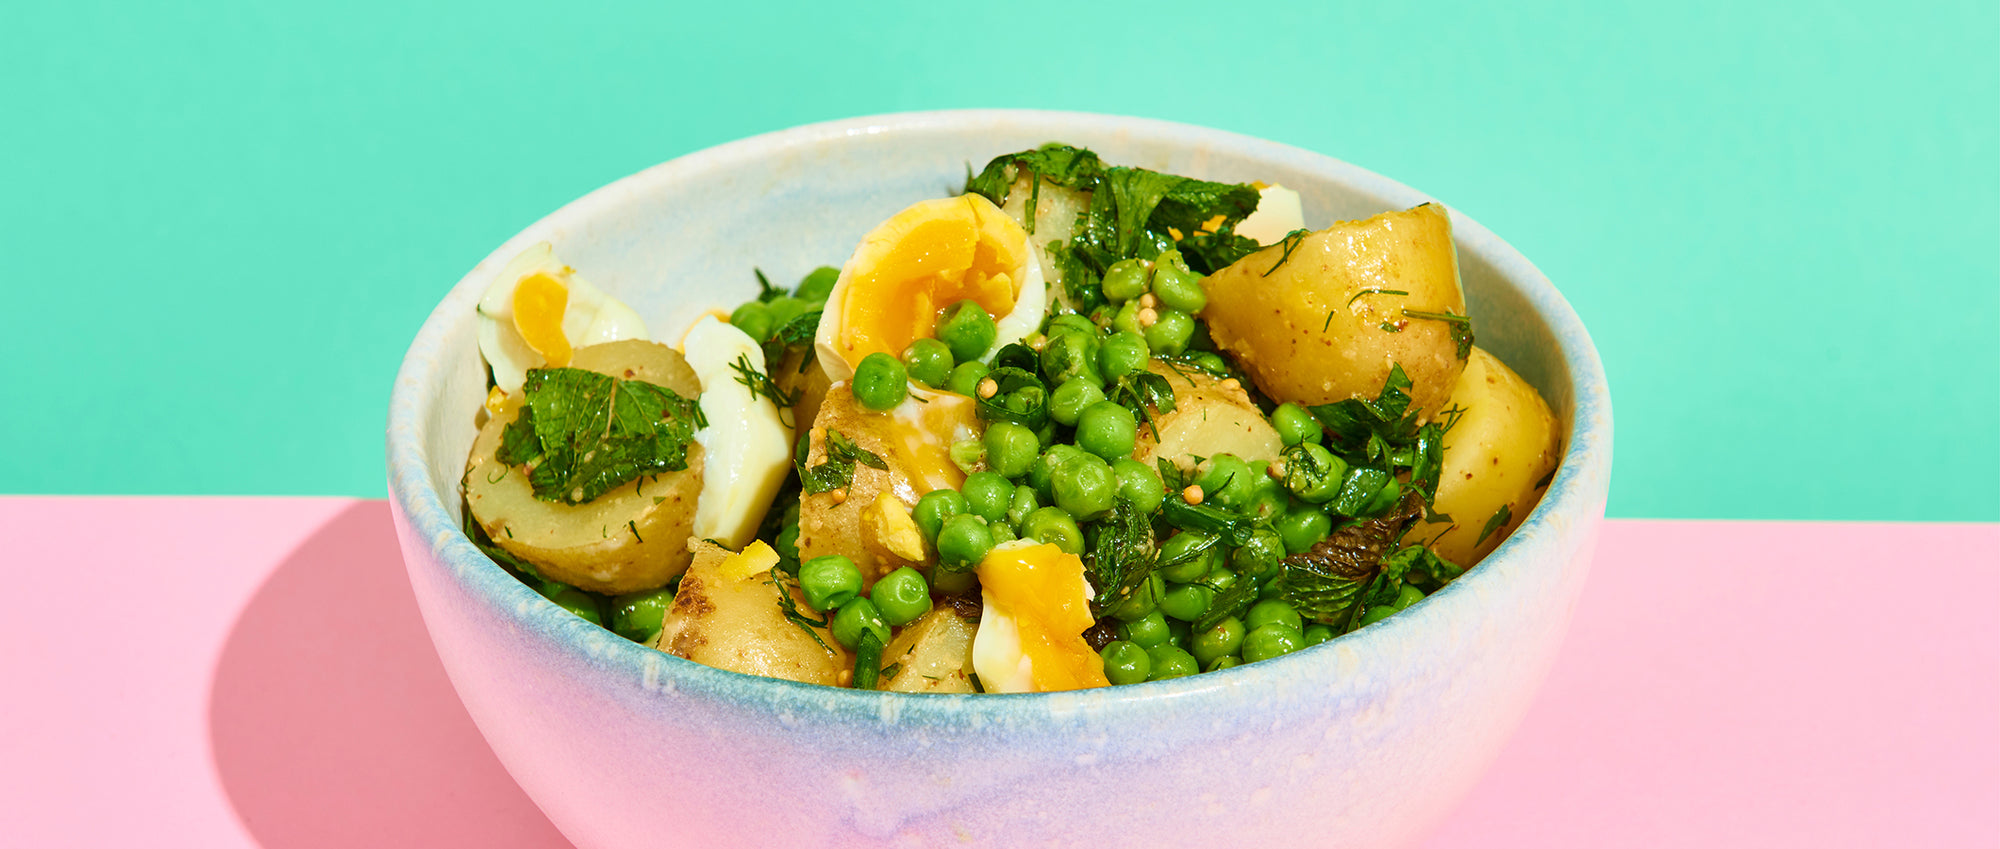 Kartoffelsalat mit Erbsen, Eiern und Minze